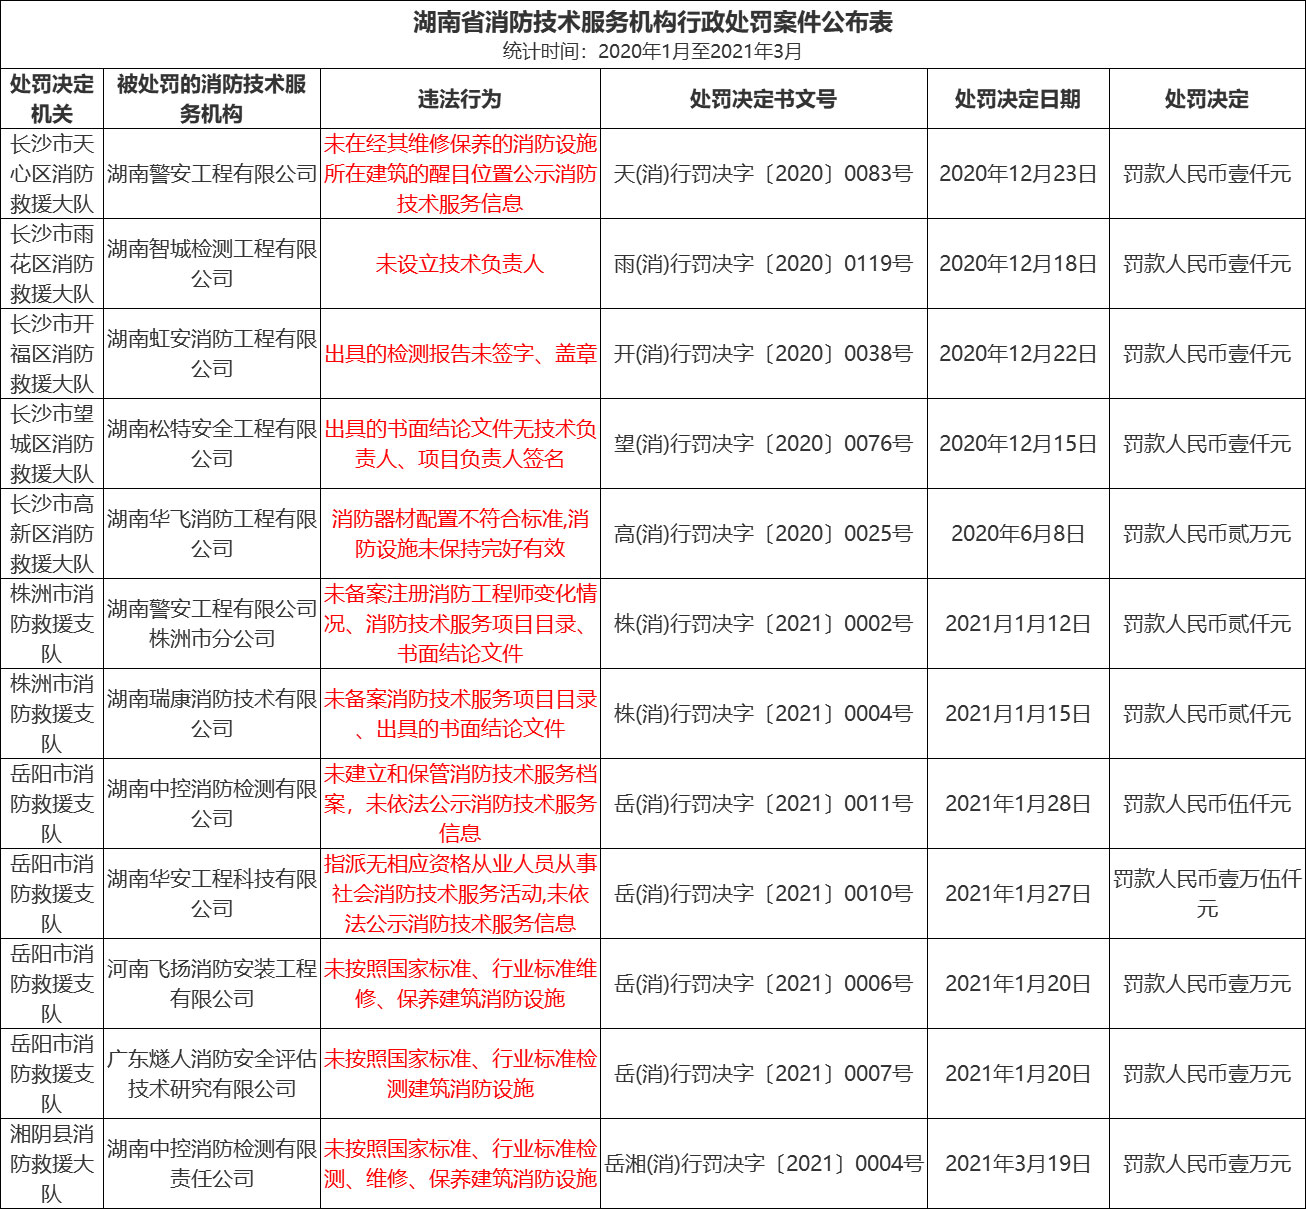 湖南消防技术服务机构行政处罚案件公布表